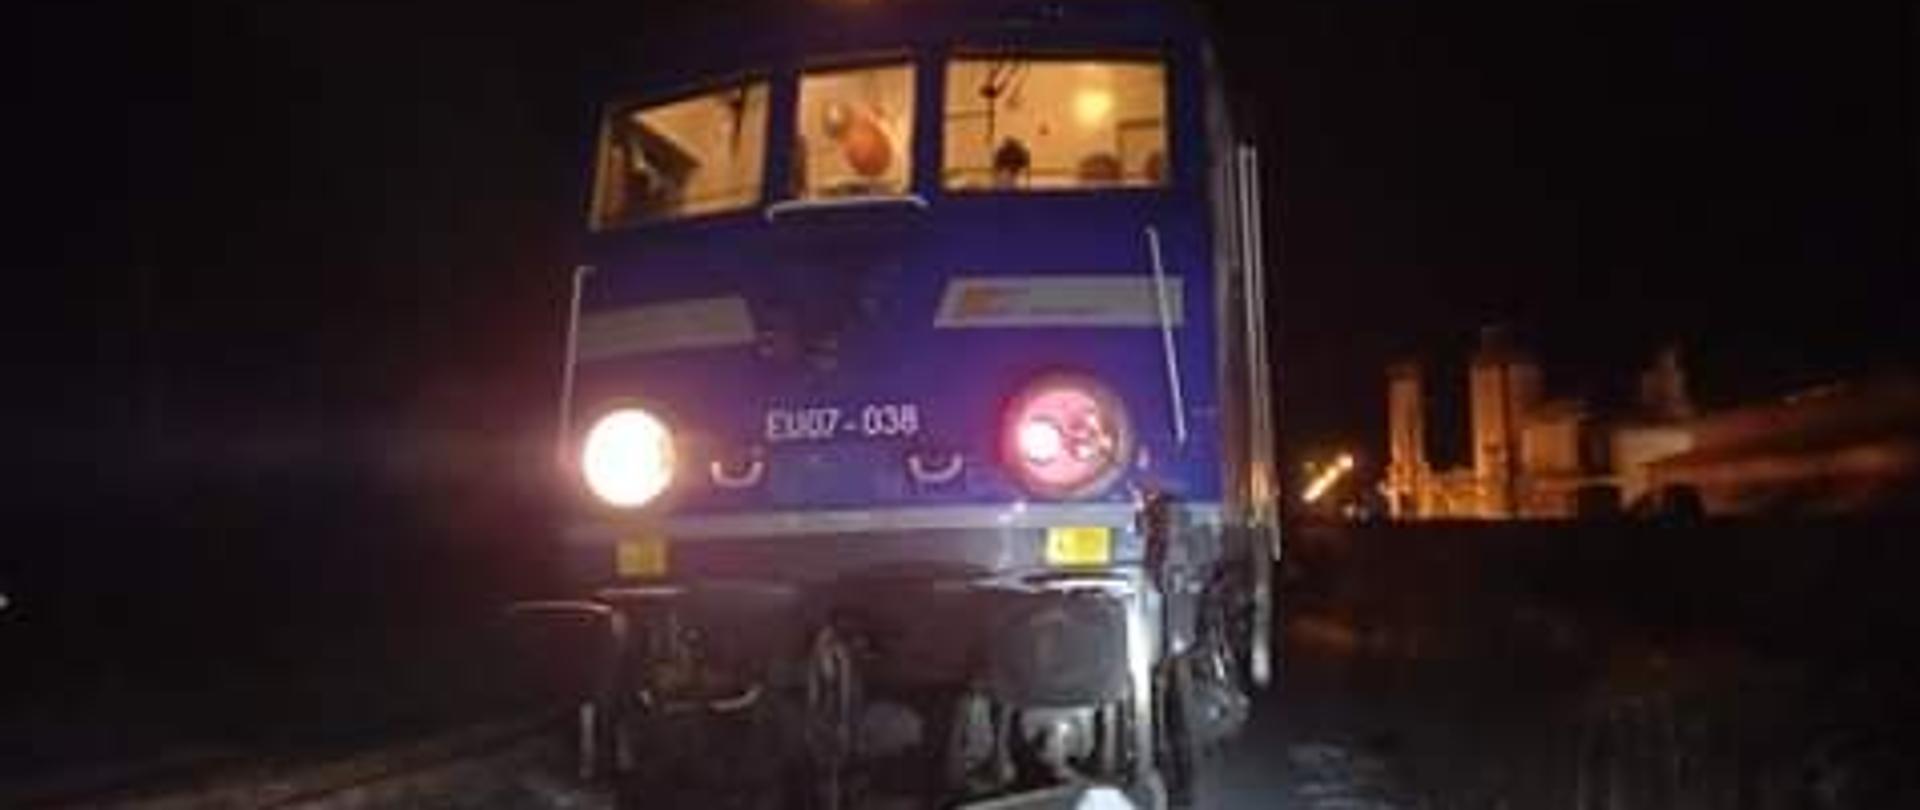 Zdjęcie przedstawia przód lokomotywy pociągu pasażerskiego, lokomotywa koloru niebieskiego z dwoma okrągłymi światłami na przodzie. W tle krajobraz nocny.